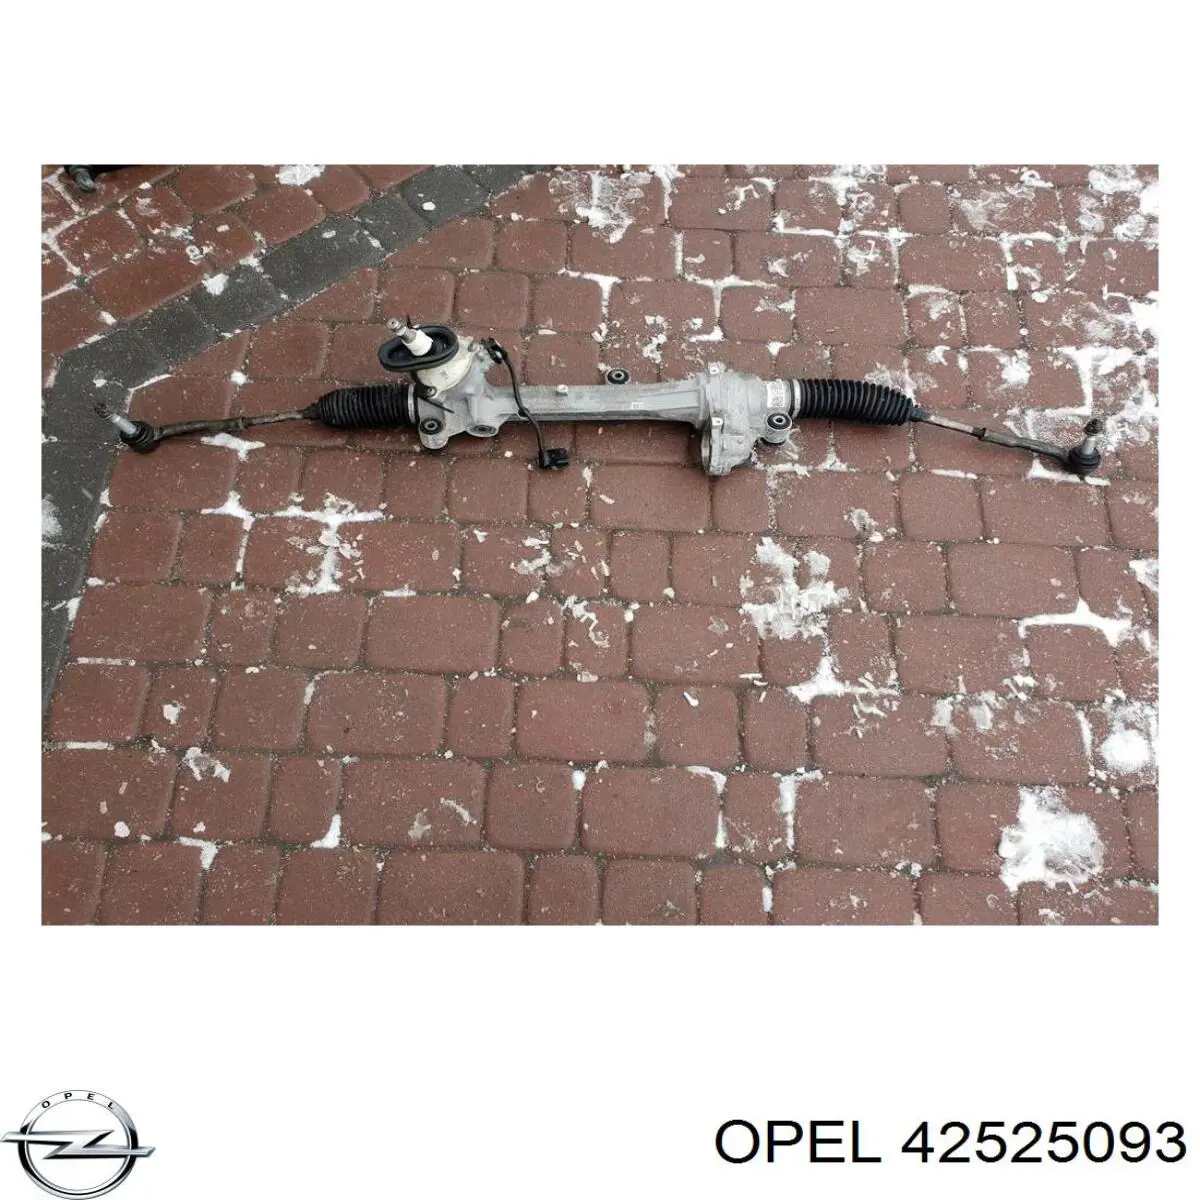 39061704 Opel cremallera de dirección